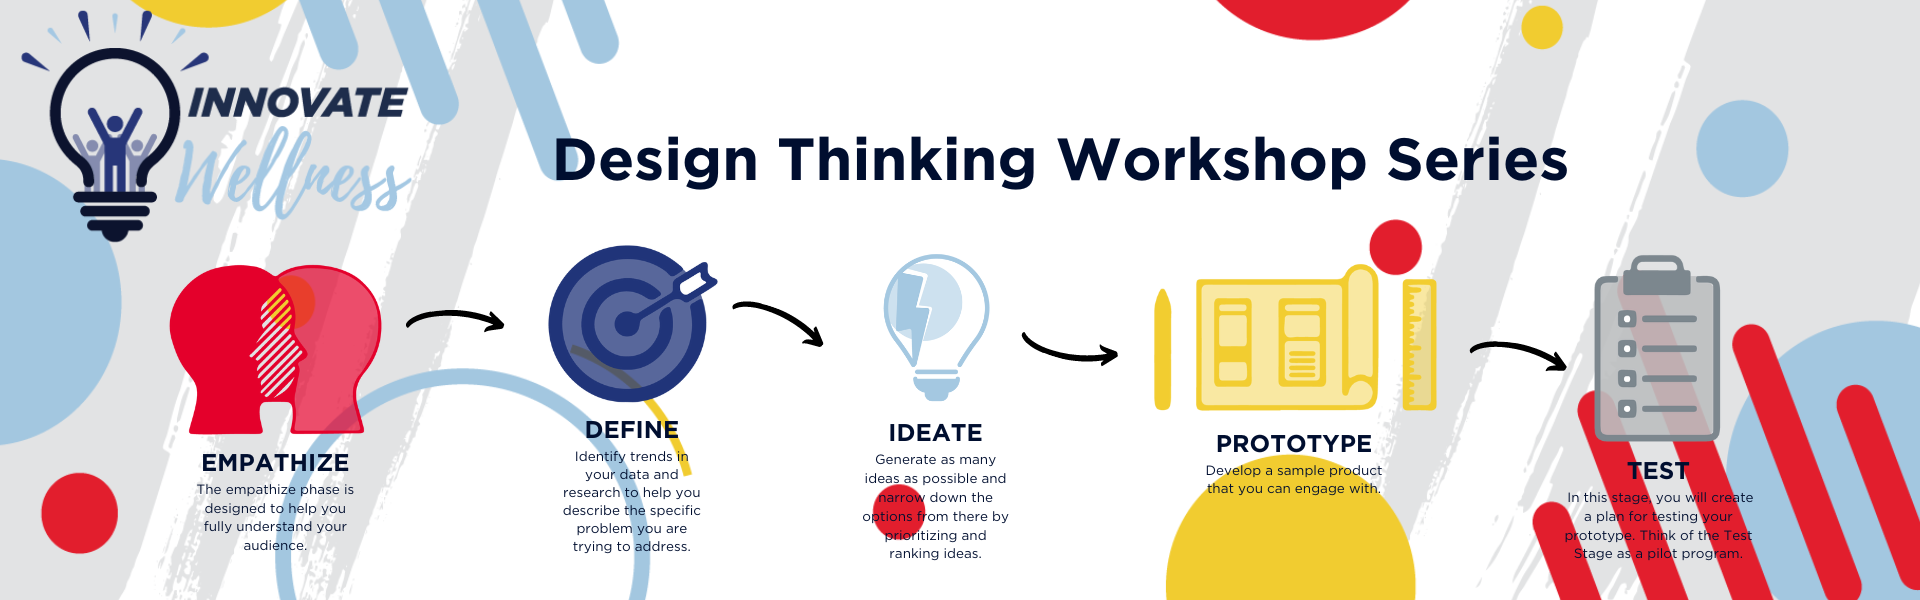 IW Design Thinking Workshop Series banner